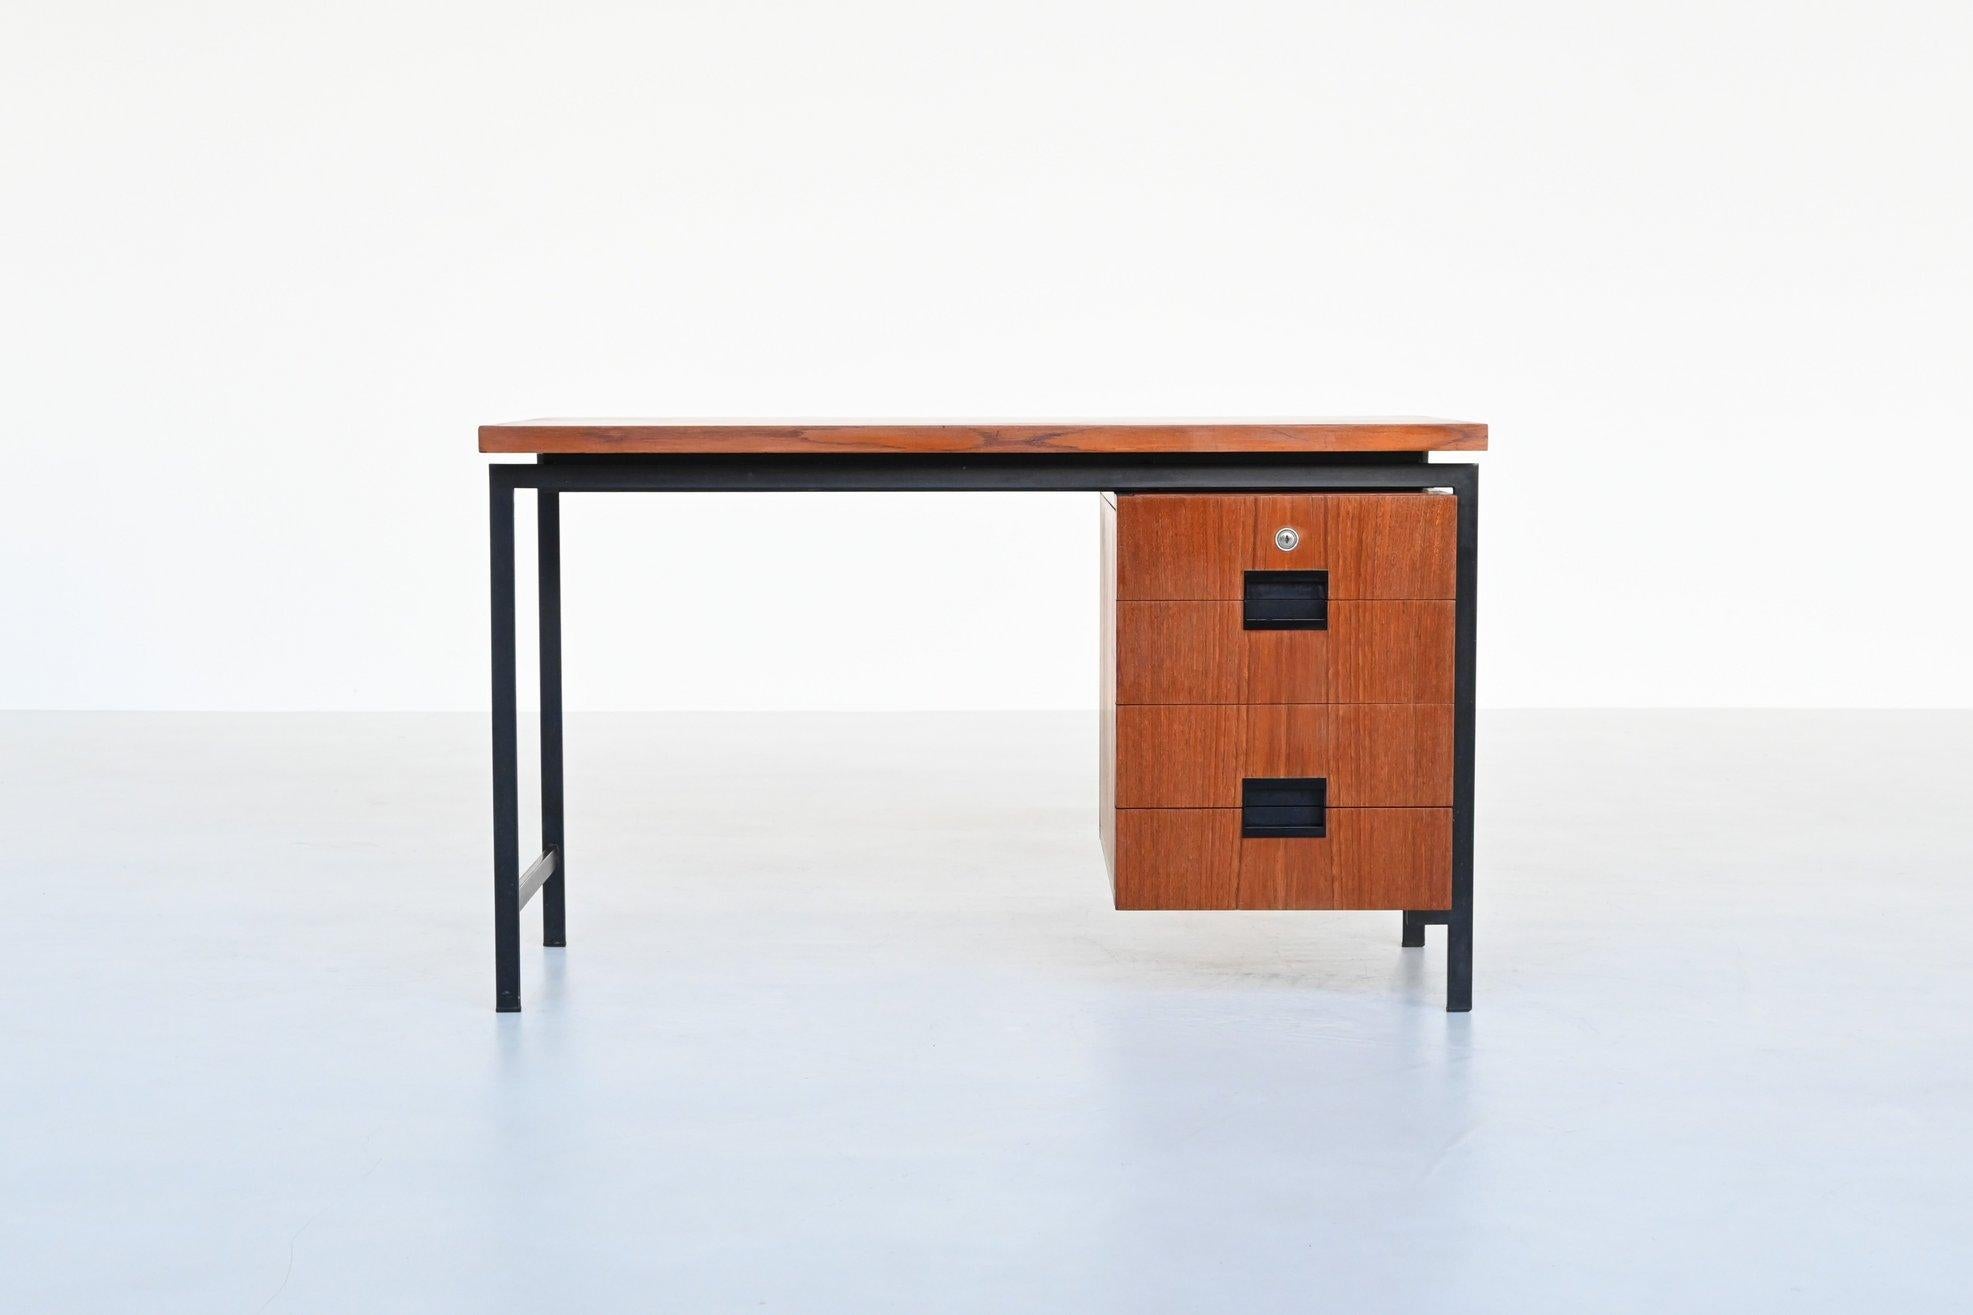 Magnifique bureau de forme modèle EU01 de la série japonaise conçu par Cees Braakman pour Pastoe, Pays-Bas 1958. Ce bureau minimaliste est fabriqué en bois de teck et possède un cadre en métal laqué noir. Les poignées sont en plastique moulé noir.